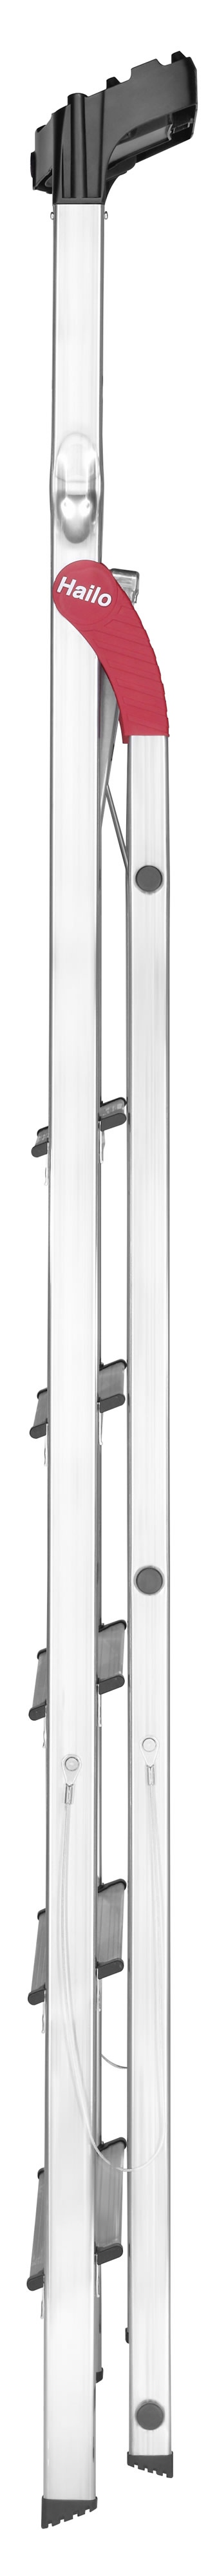 Фото товара Стремянка алюминиевая Hailo L60 StandartLine, 6 ступеней, с лотком для инструментов, арт. 8160-607